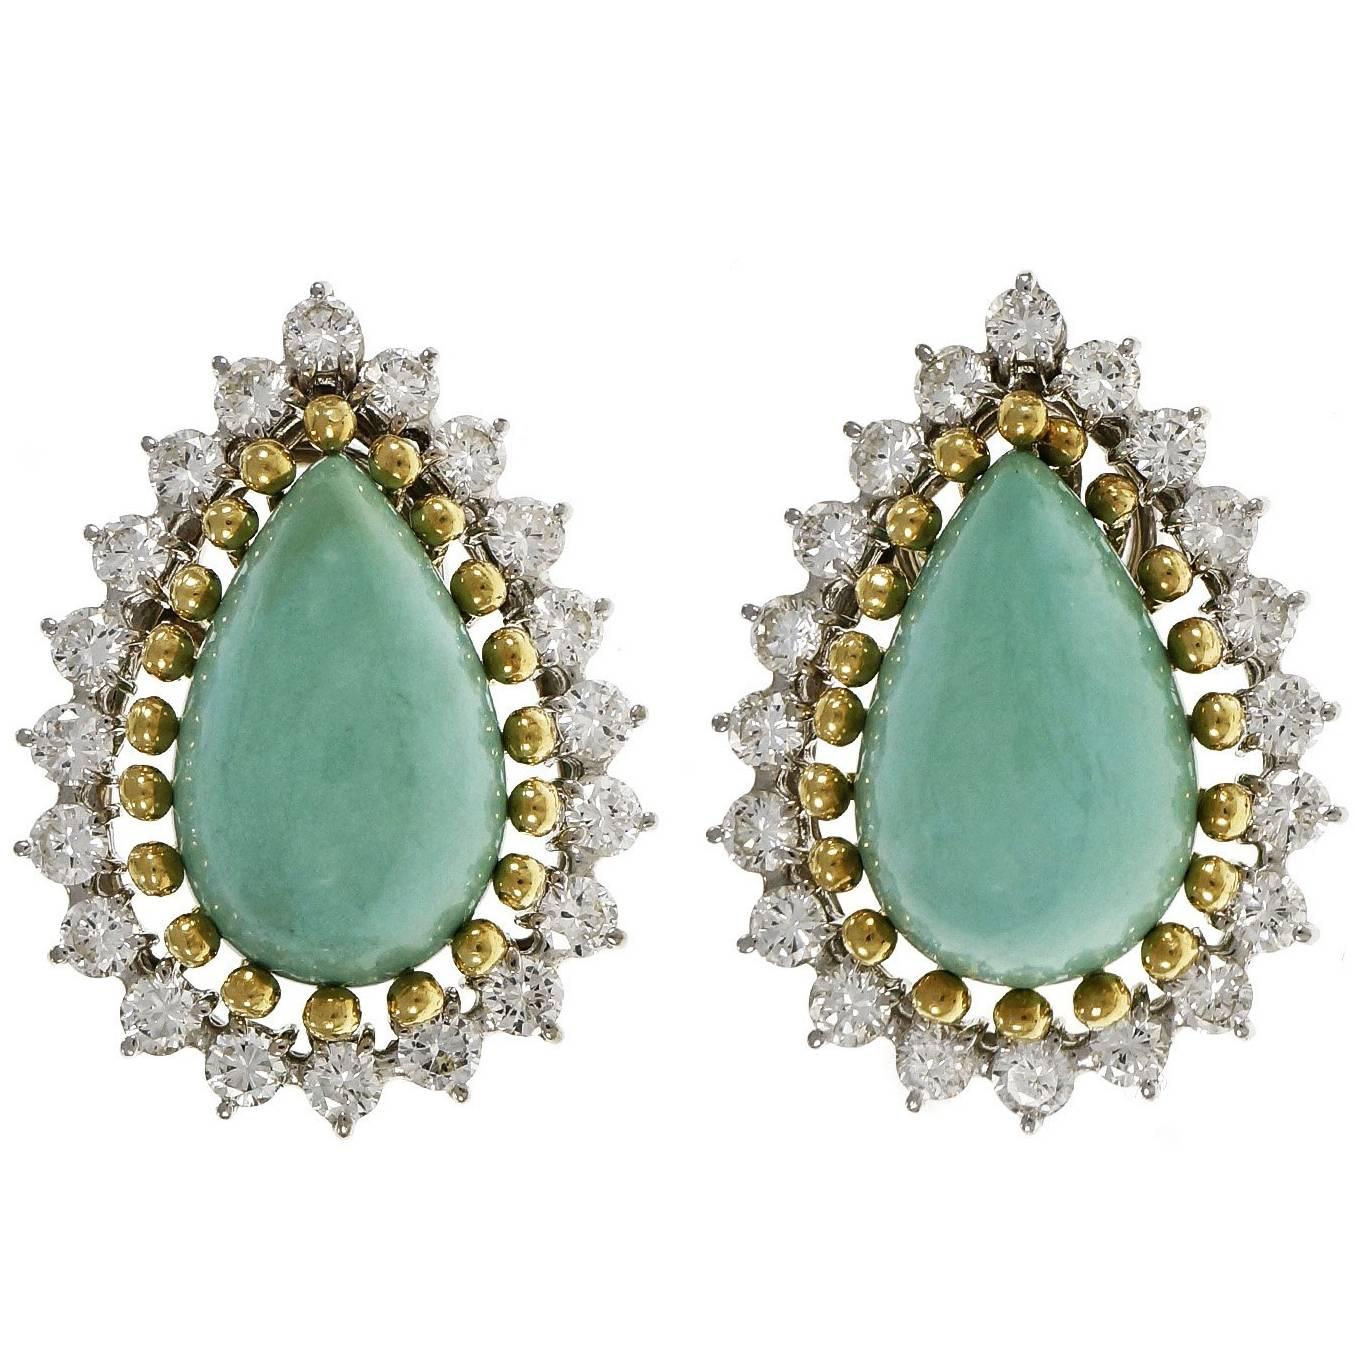 Mitte der 1950er Jahre GIA zertifiziert natürlichen Türkis und Diamant-Clip-Post-Ohrringe. Natürlicher, unbehandelter persischer Türkis, umgeben von strahlend weißen Diamanten im Vollschliff. Die Ohrringe sind aus 14-karätigem Weißgold mit Bändern